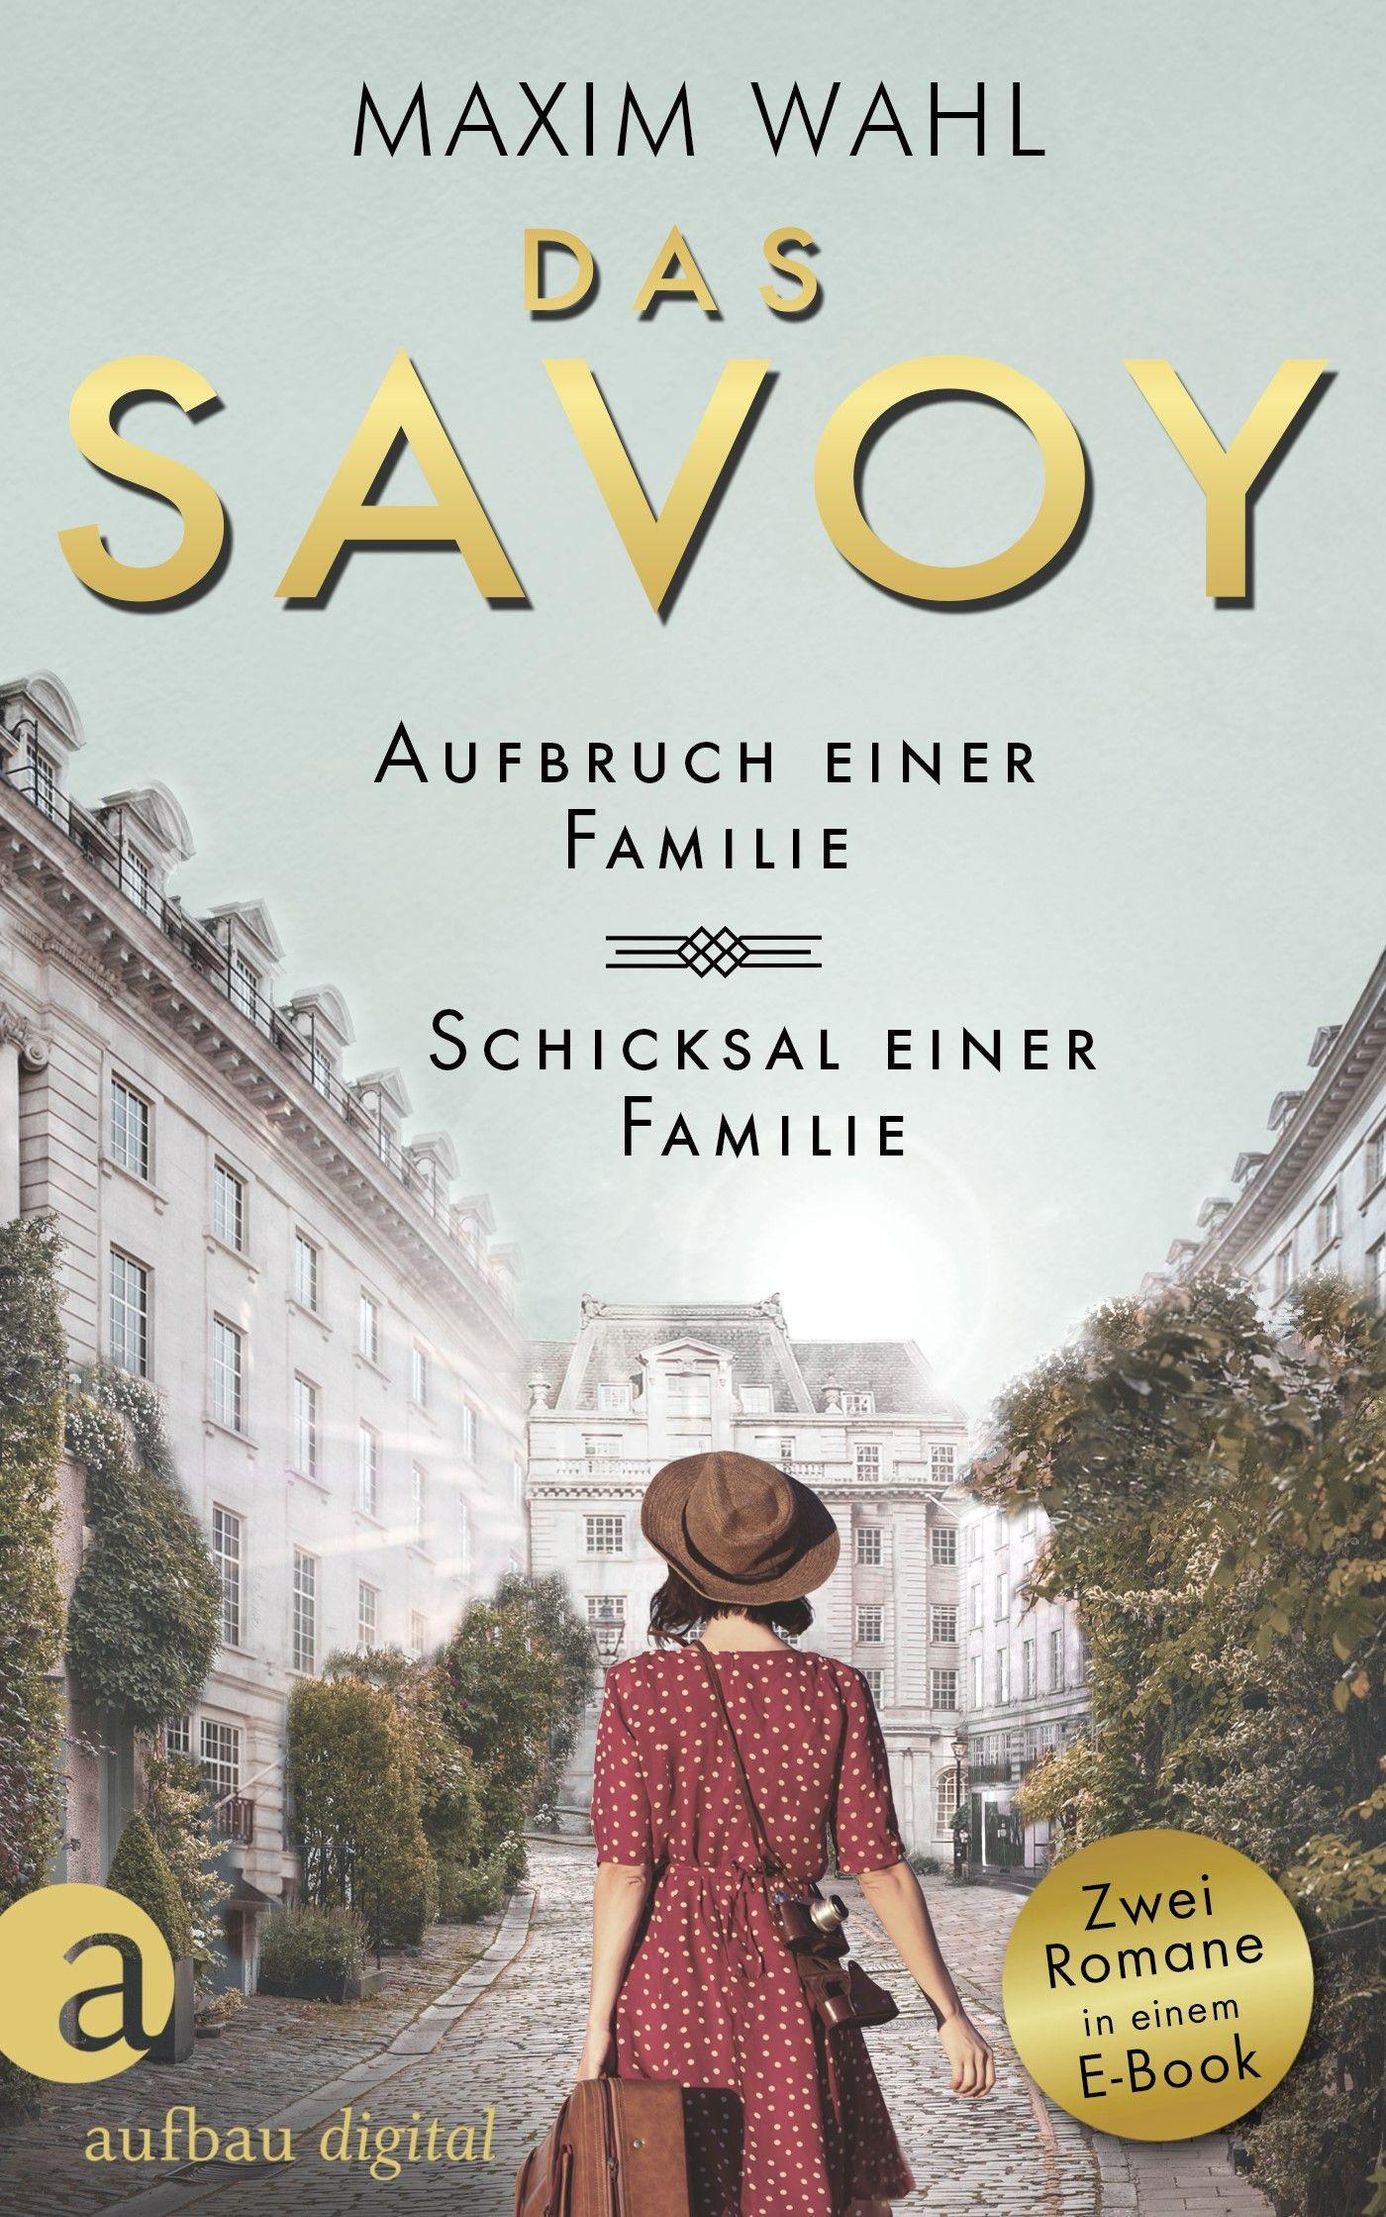 Das Savoy - Aufbruch einer Familie & Schicksal einer Familie eBook v. Maxim  Wahl | Weltbild